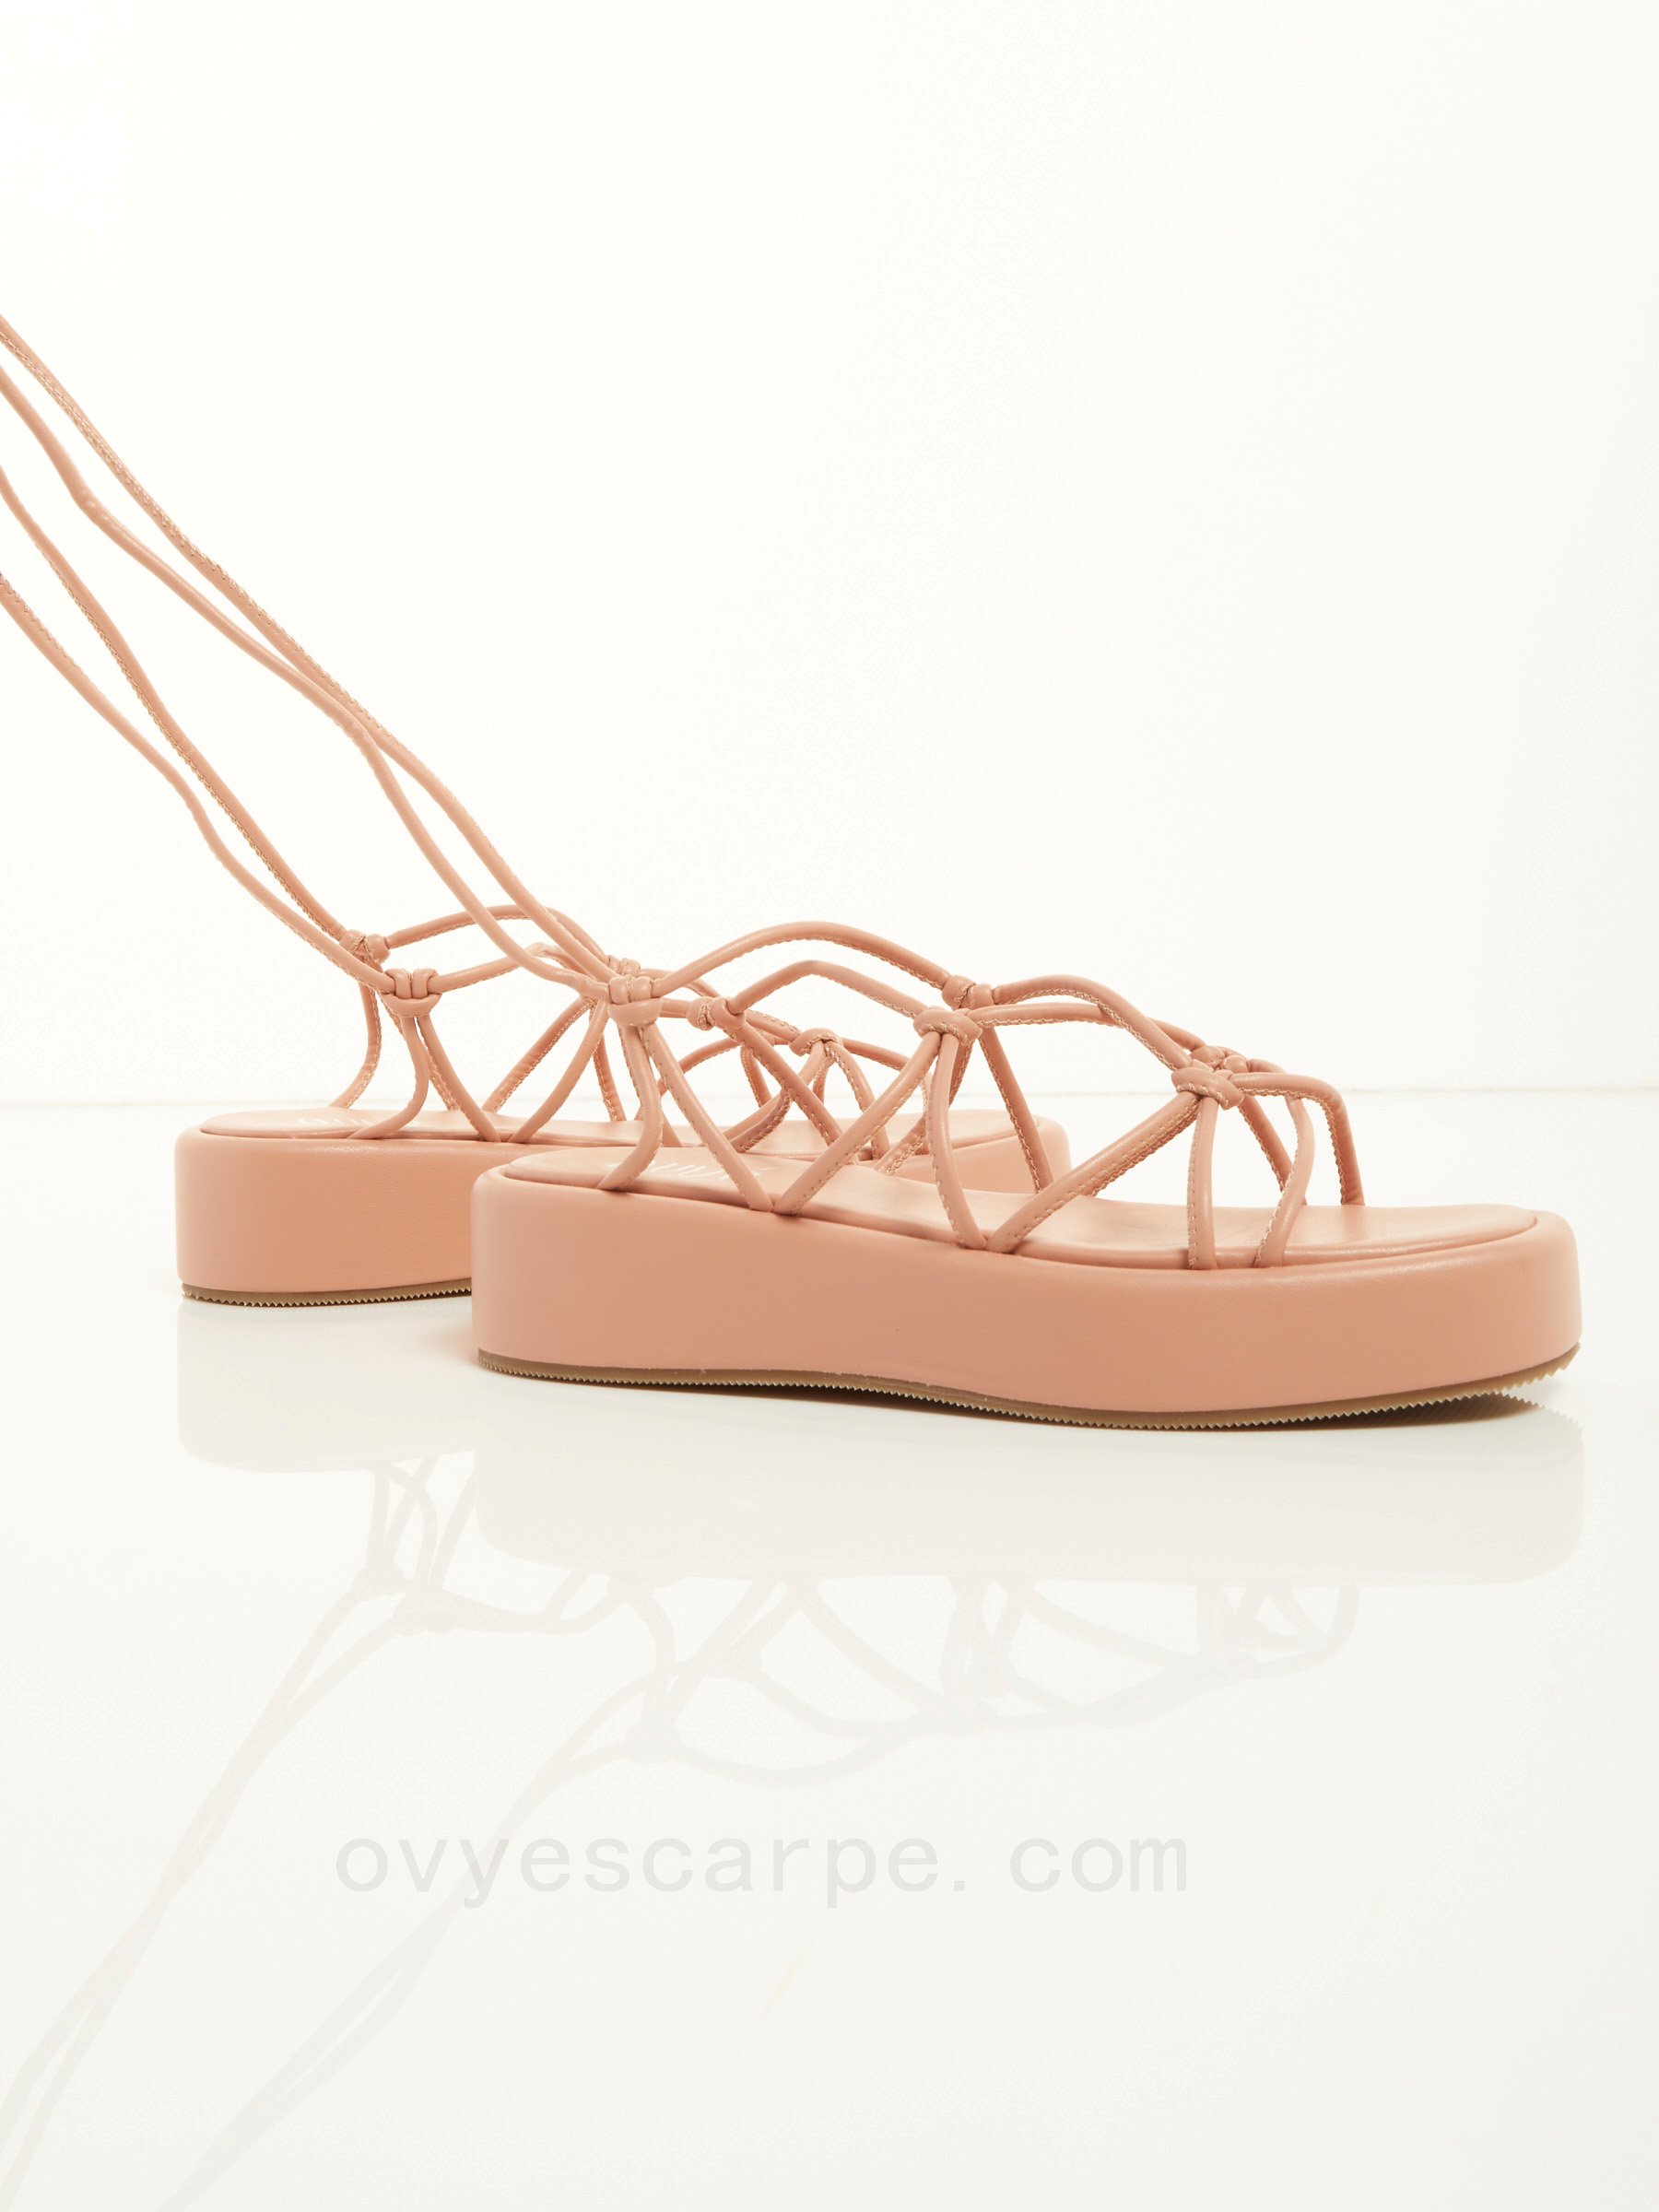 Comperare Greek Flat Sandals F08161027-0453 Basso Prezzo